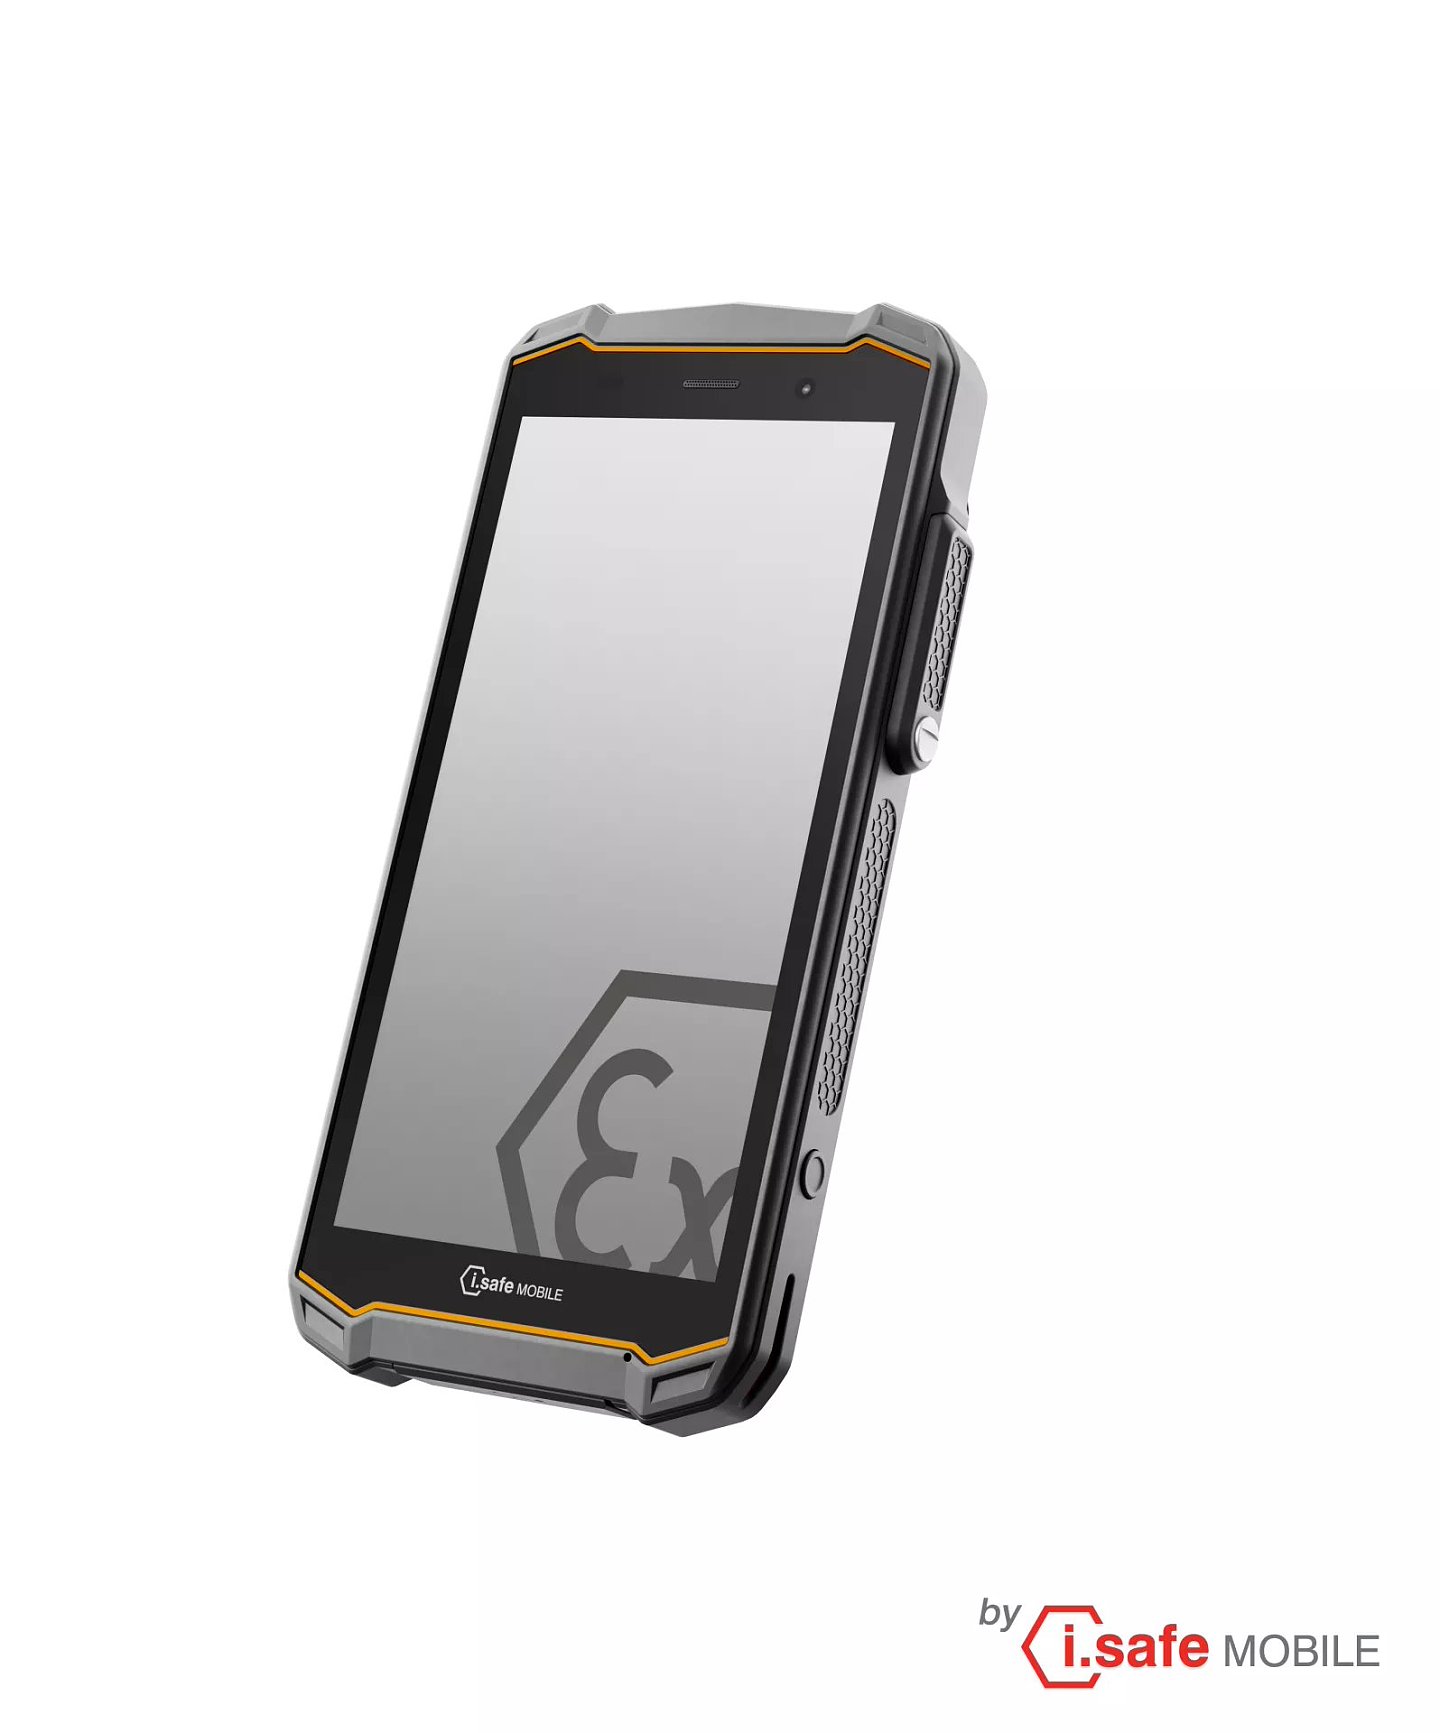 诺基亚联合德国 i.safe 推出 IS540.2 工业手机：高通 QCM6490 芯片、4400 毫安时电池 - 1